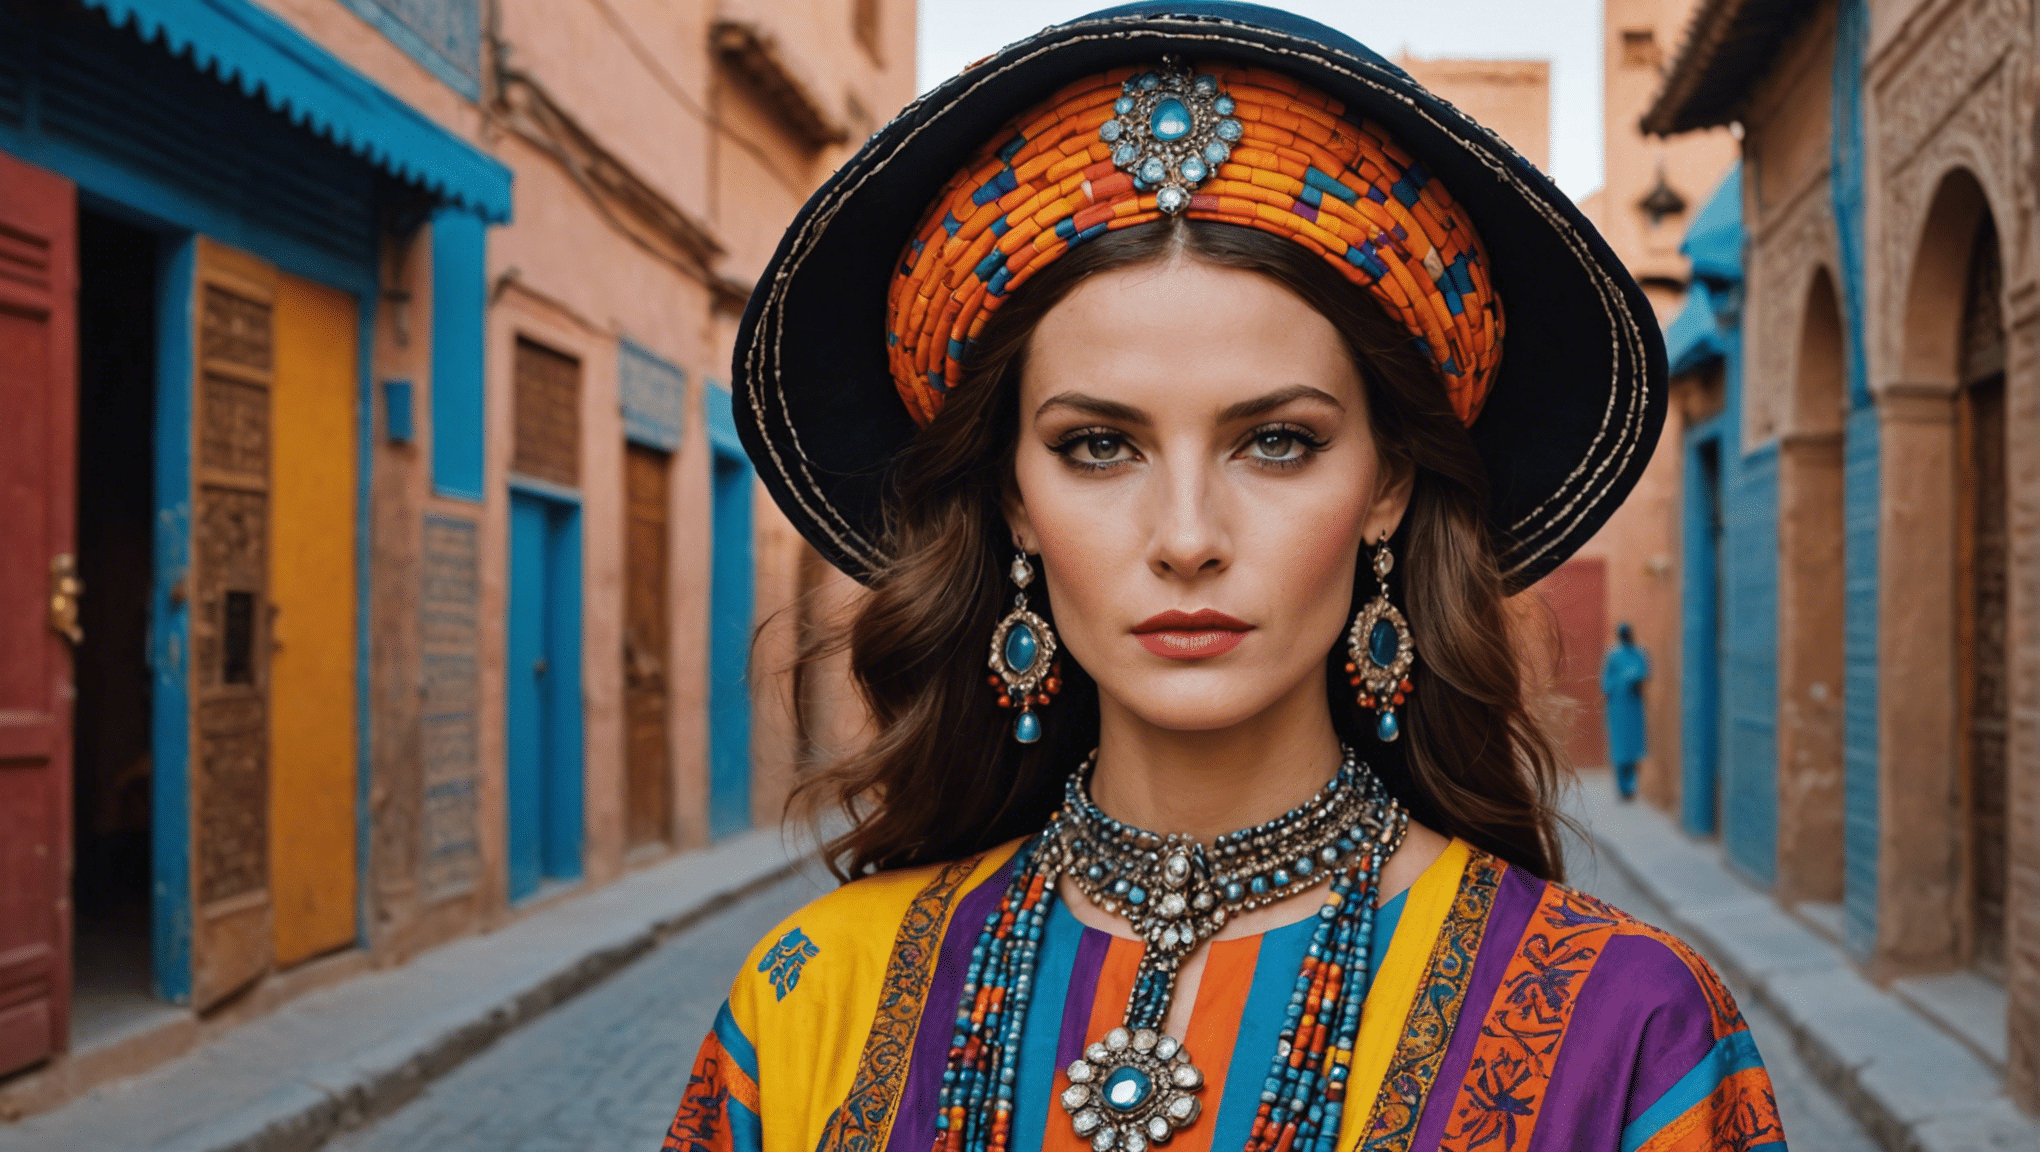 Entdecken Sie die Modeinspiration von Yves Saint Laurent in der exotischen Schönheit von Marrakesch